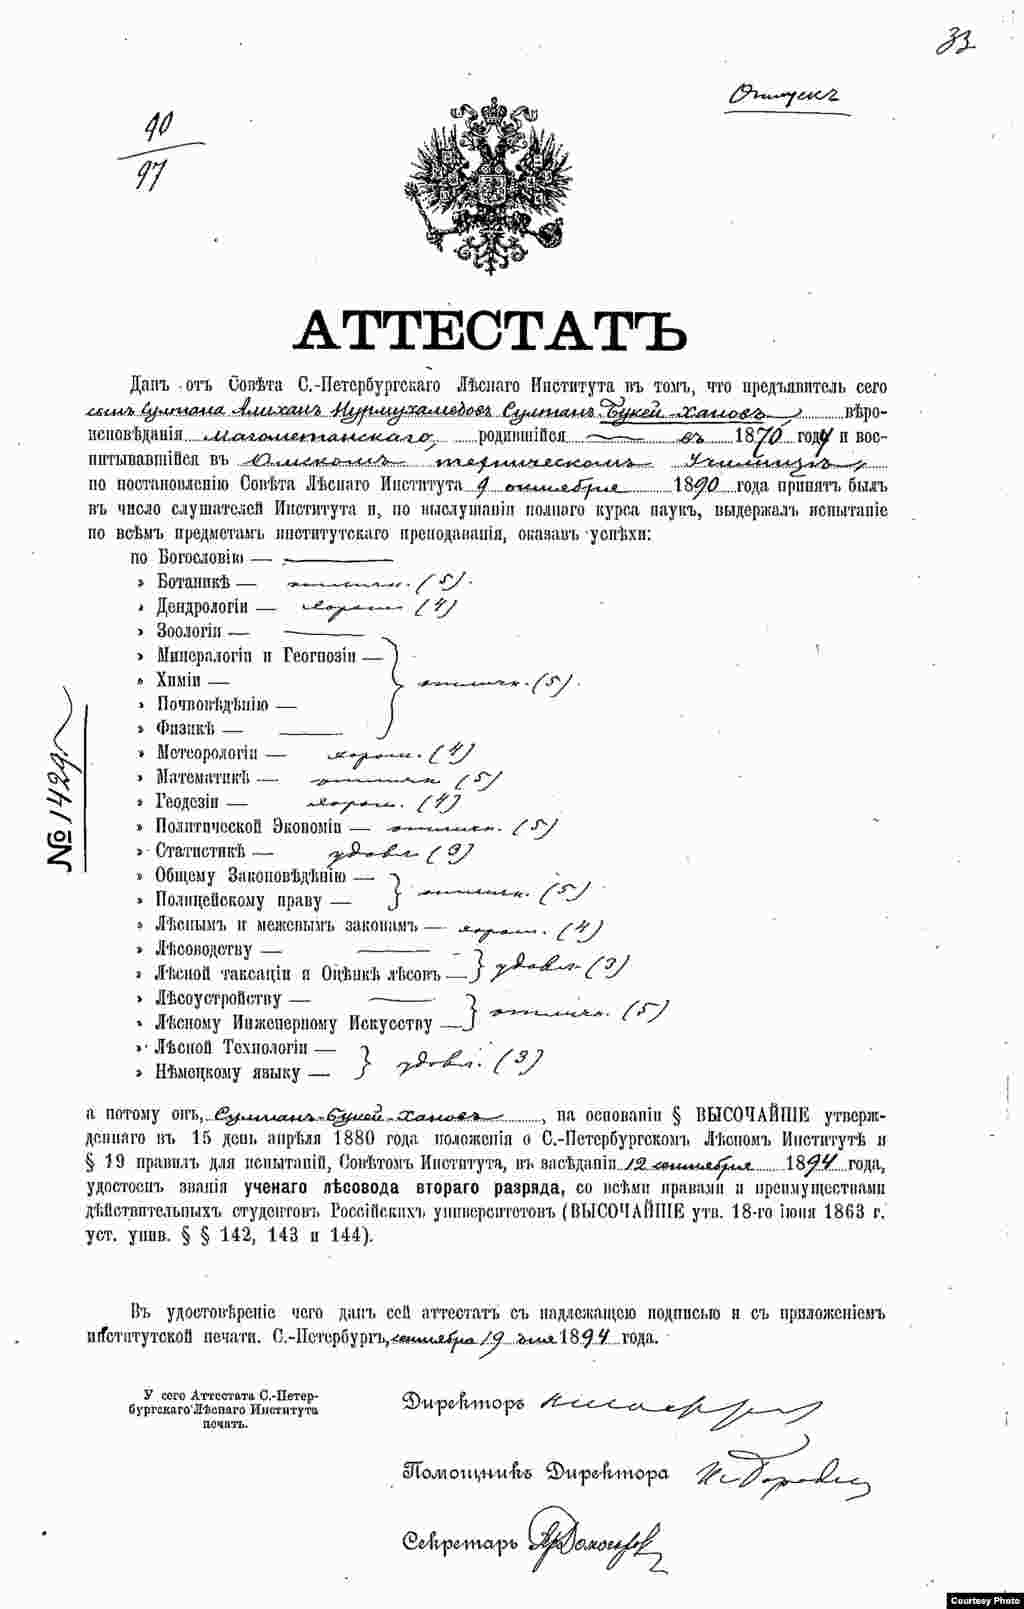 Әлихан Бөкейхановтың Петербордағы Императорлық орман институтын 1894 жылы тәмамдағаны туралы аттестат (диплом).